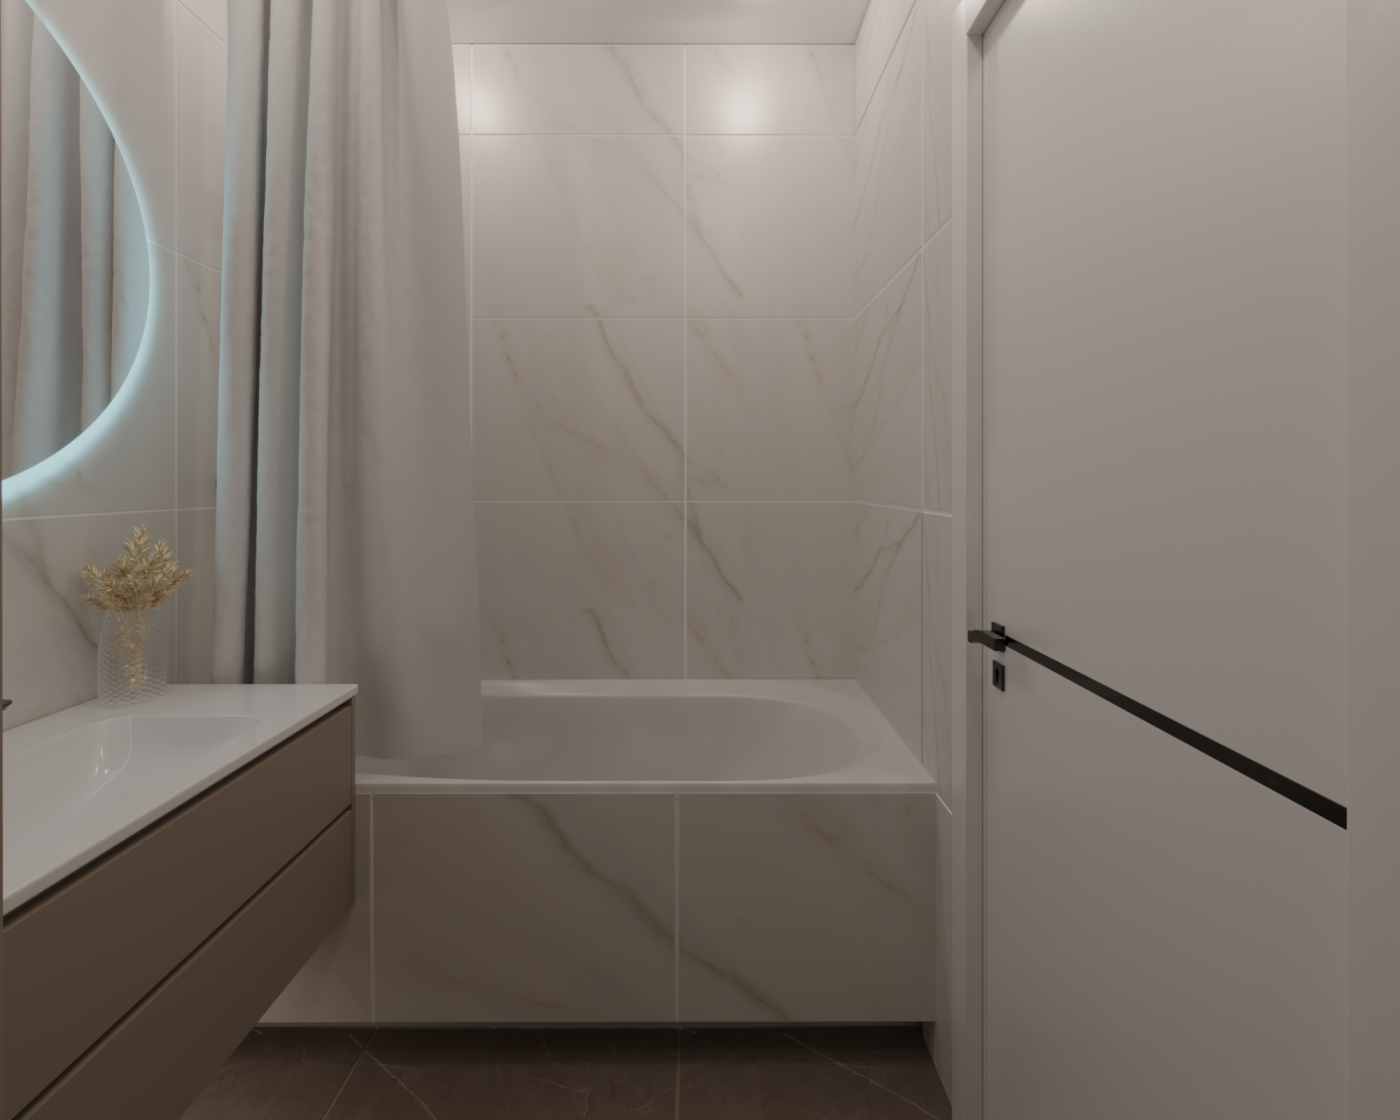 Визуализация ванной комнаты 4,3м2